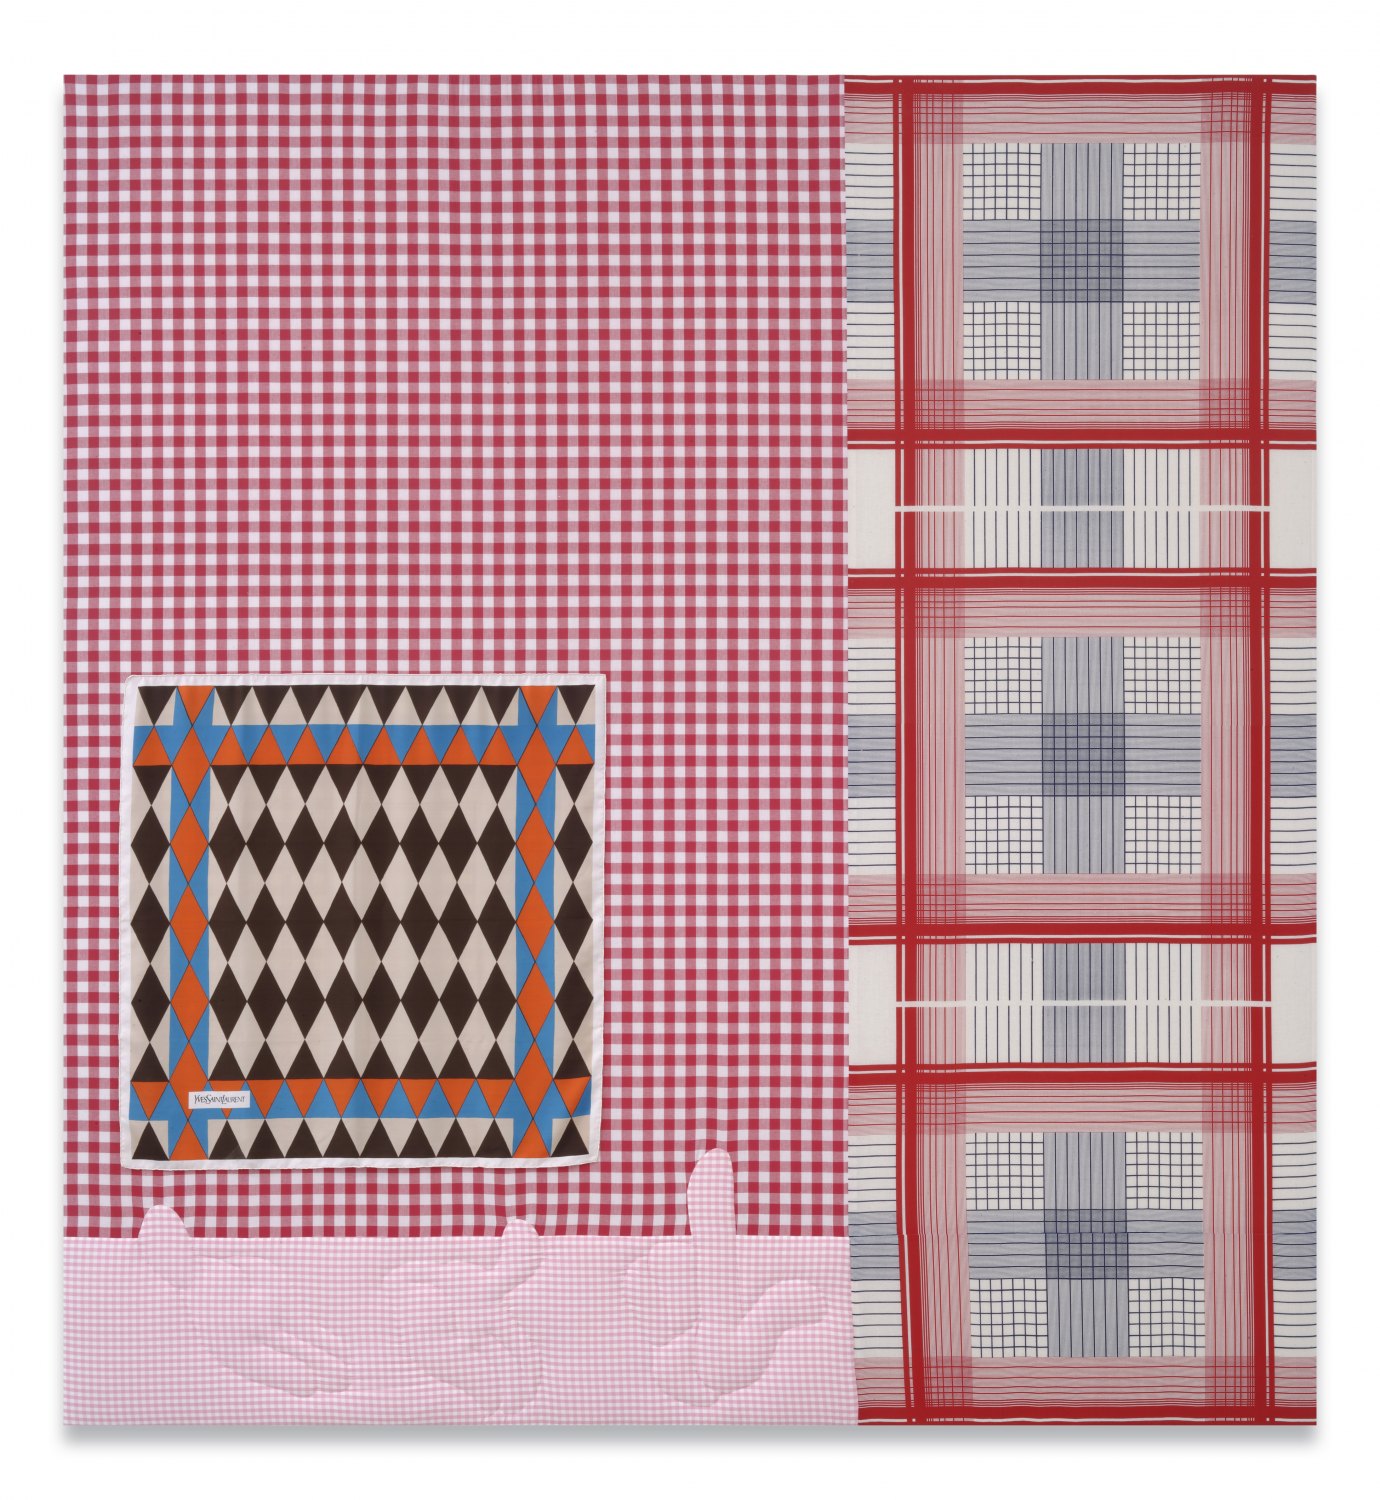 Cosima von Bonin    Polyamorie, 2007     Cotton, silk, 238 × 221 